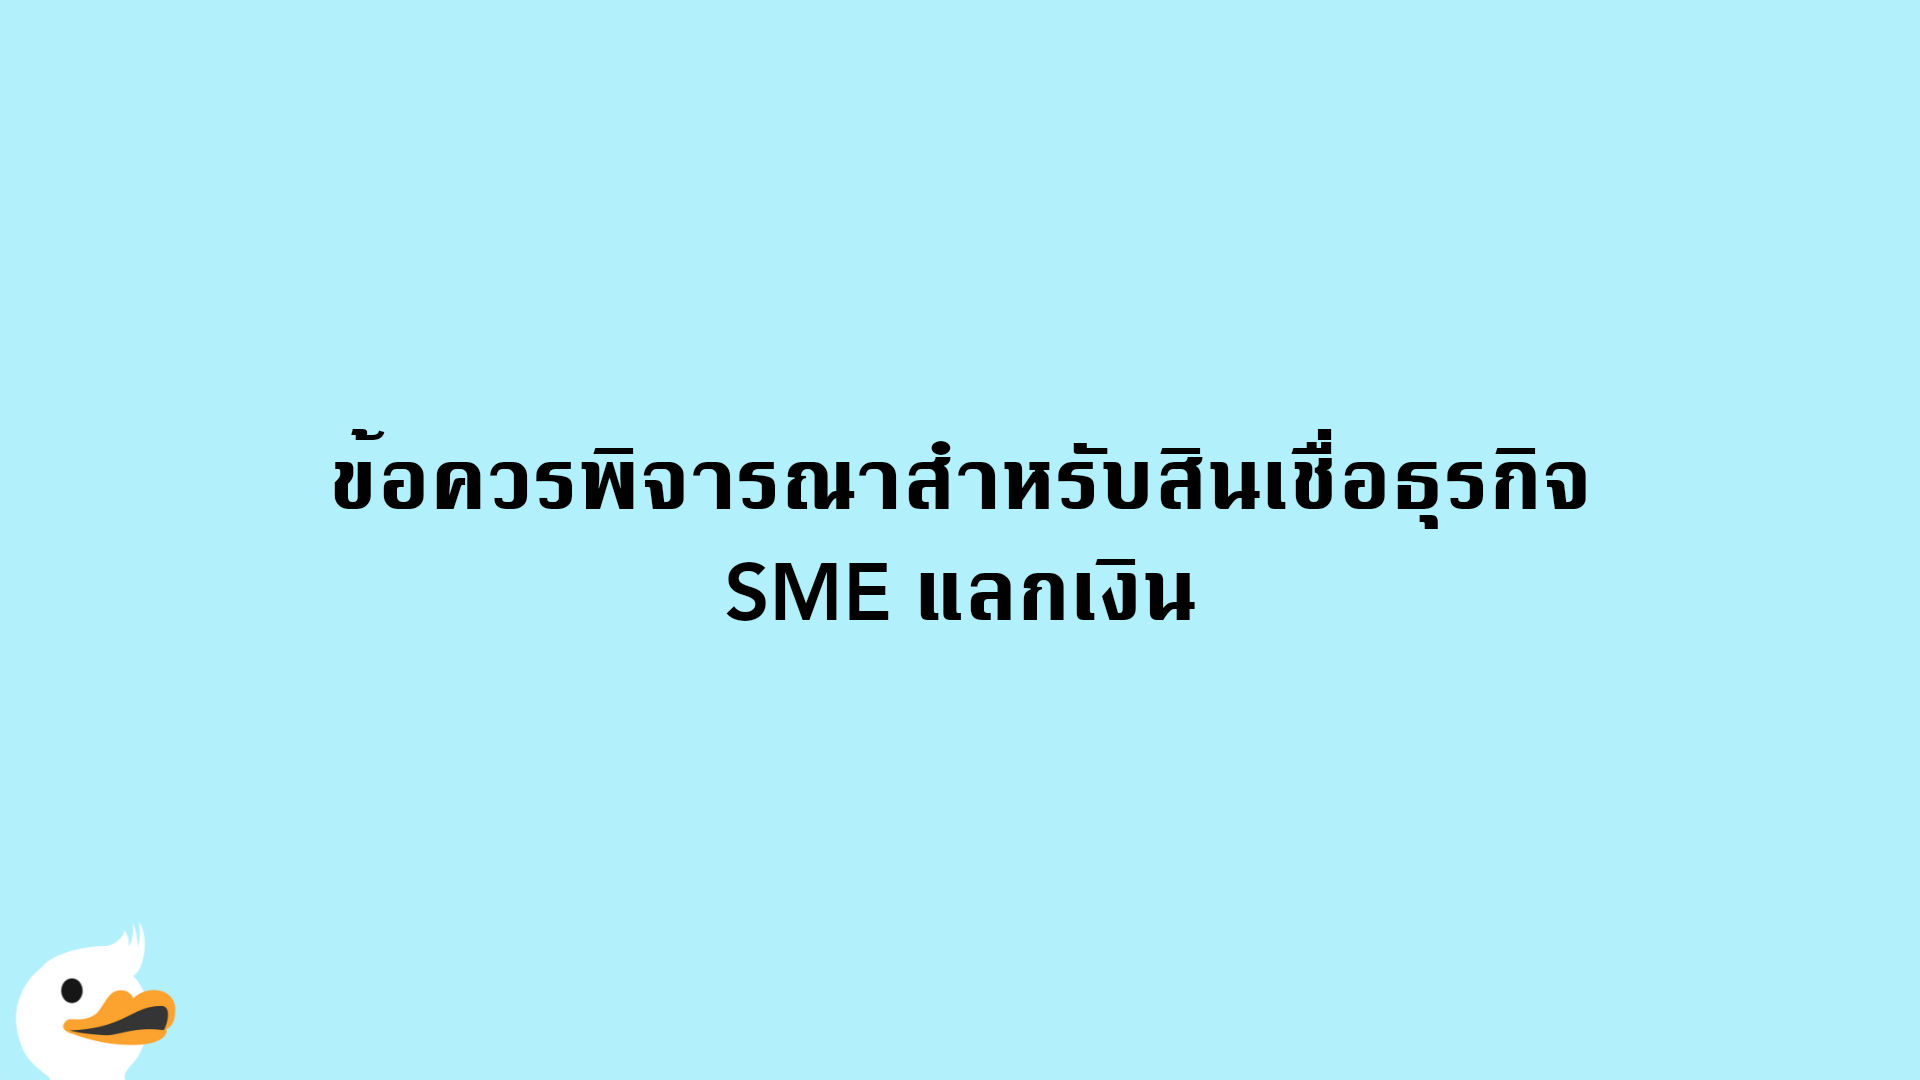 ข้อควรพิจารณาสำหรับสินเชื่อธุรกิจ SME แลกเงิน